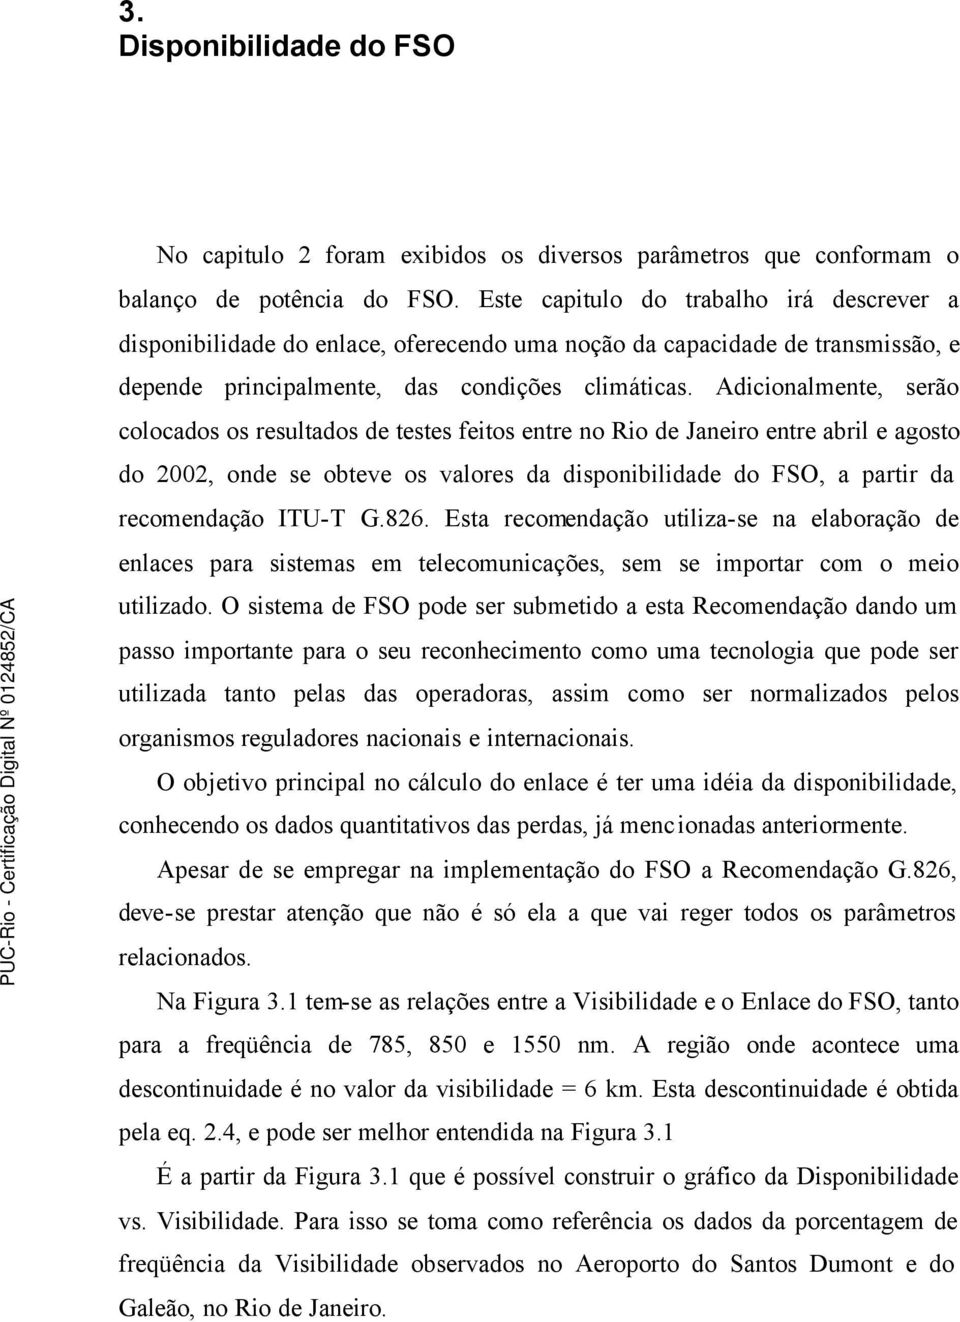 Adicionalmente, serão colocados os resultados de testes feitos entre no Rio de Janeiro entre abril e agosto do 2002, onde se obteve os valores da disponibilidade do FSO, a partir da recomendação